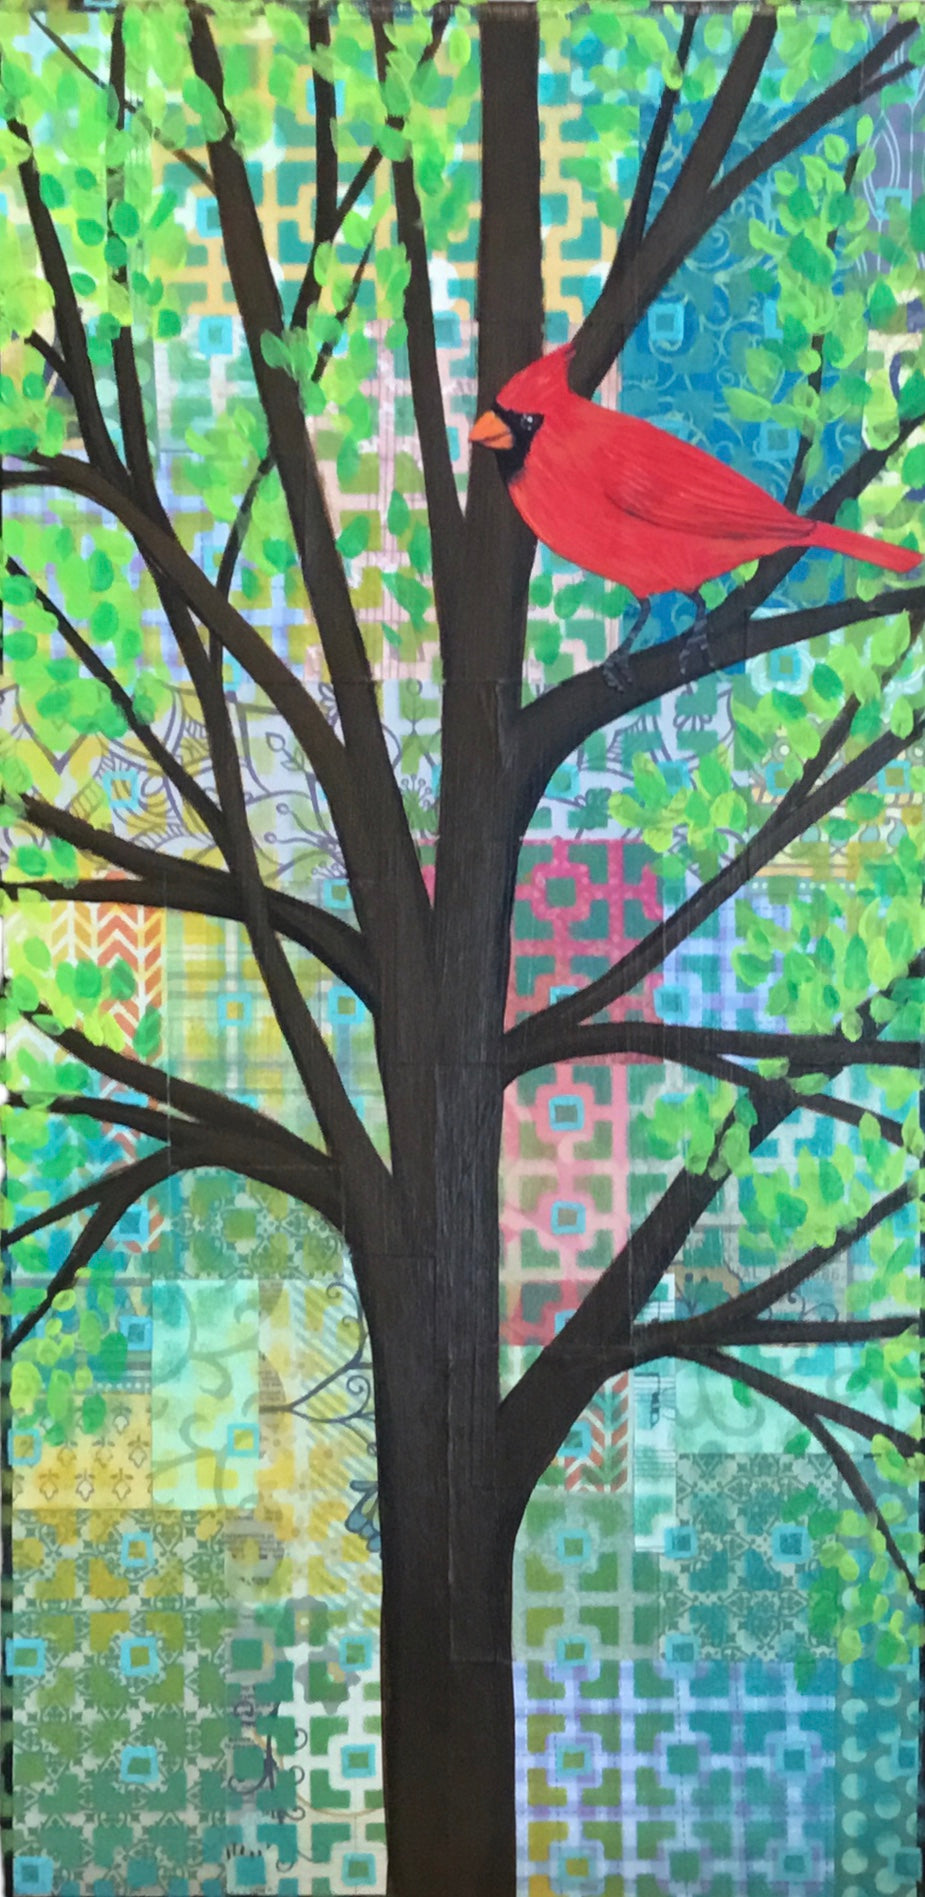 Cardinal In Tree 3